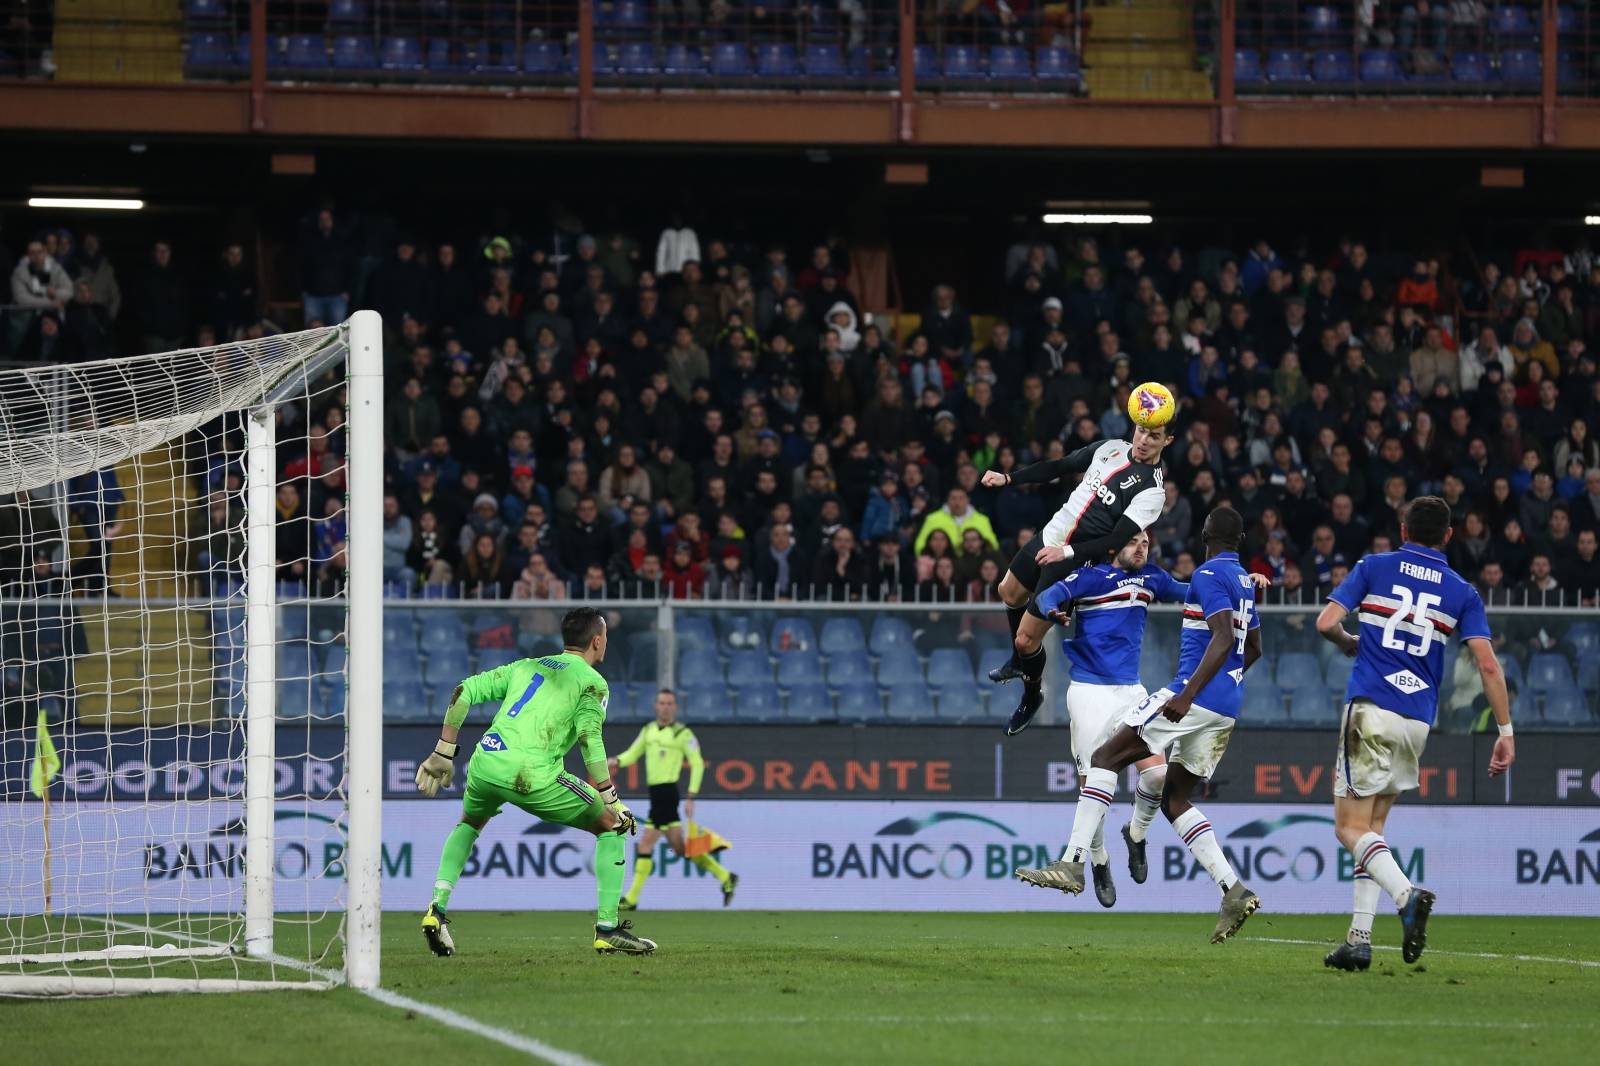 Sampdoria v Juventus - Serie A - Luigi Ferraris